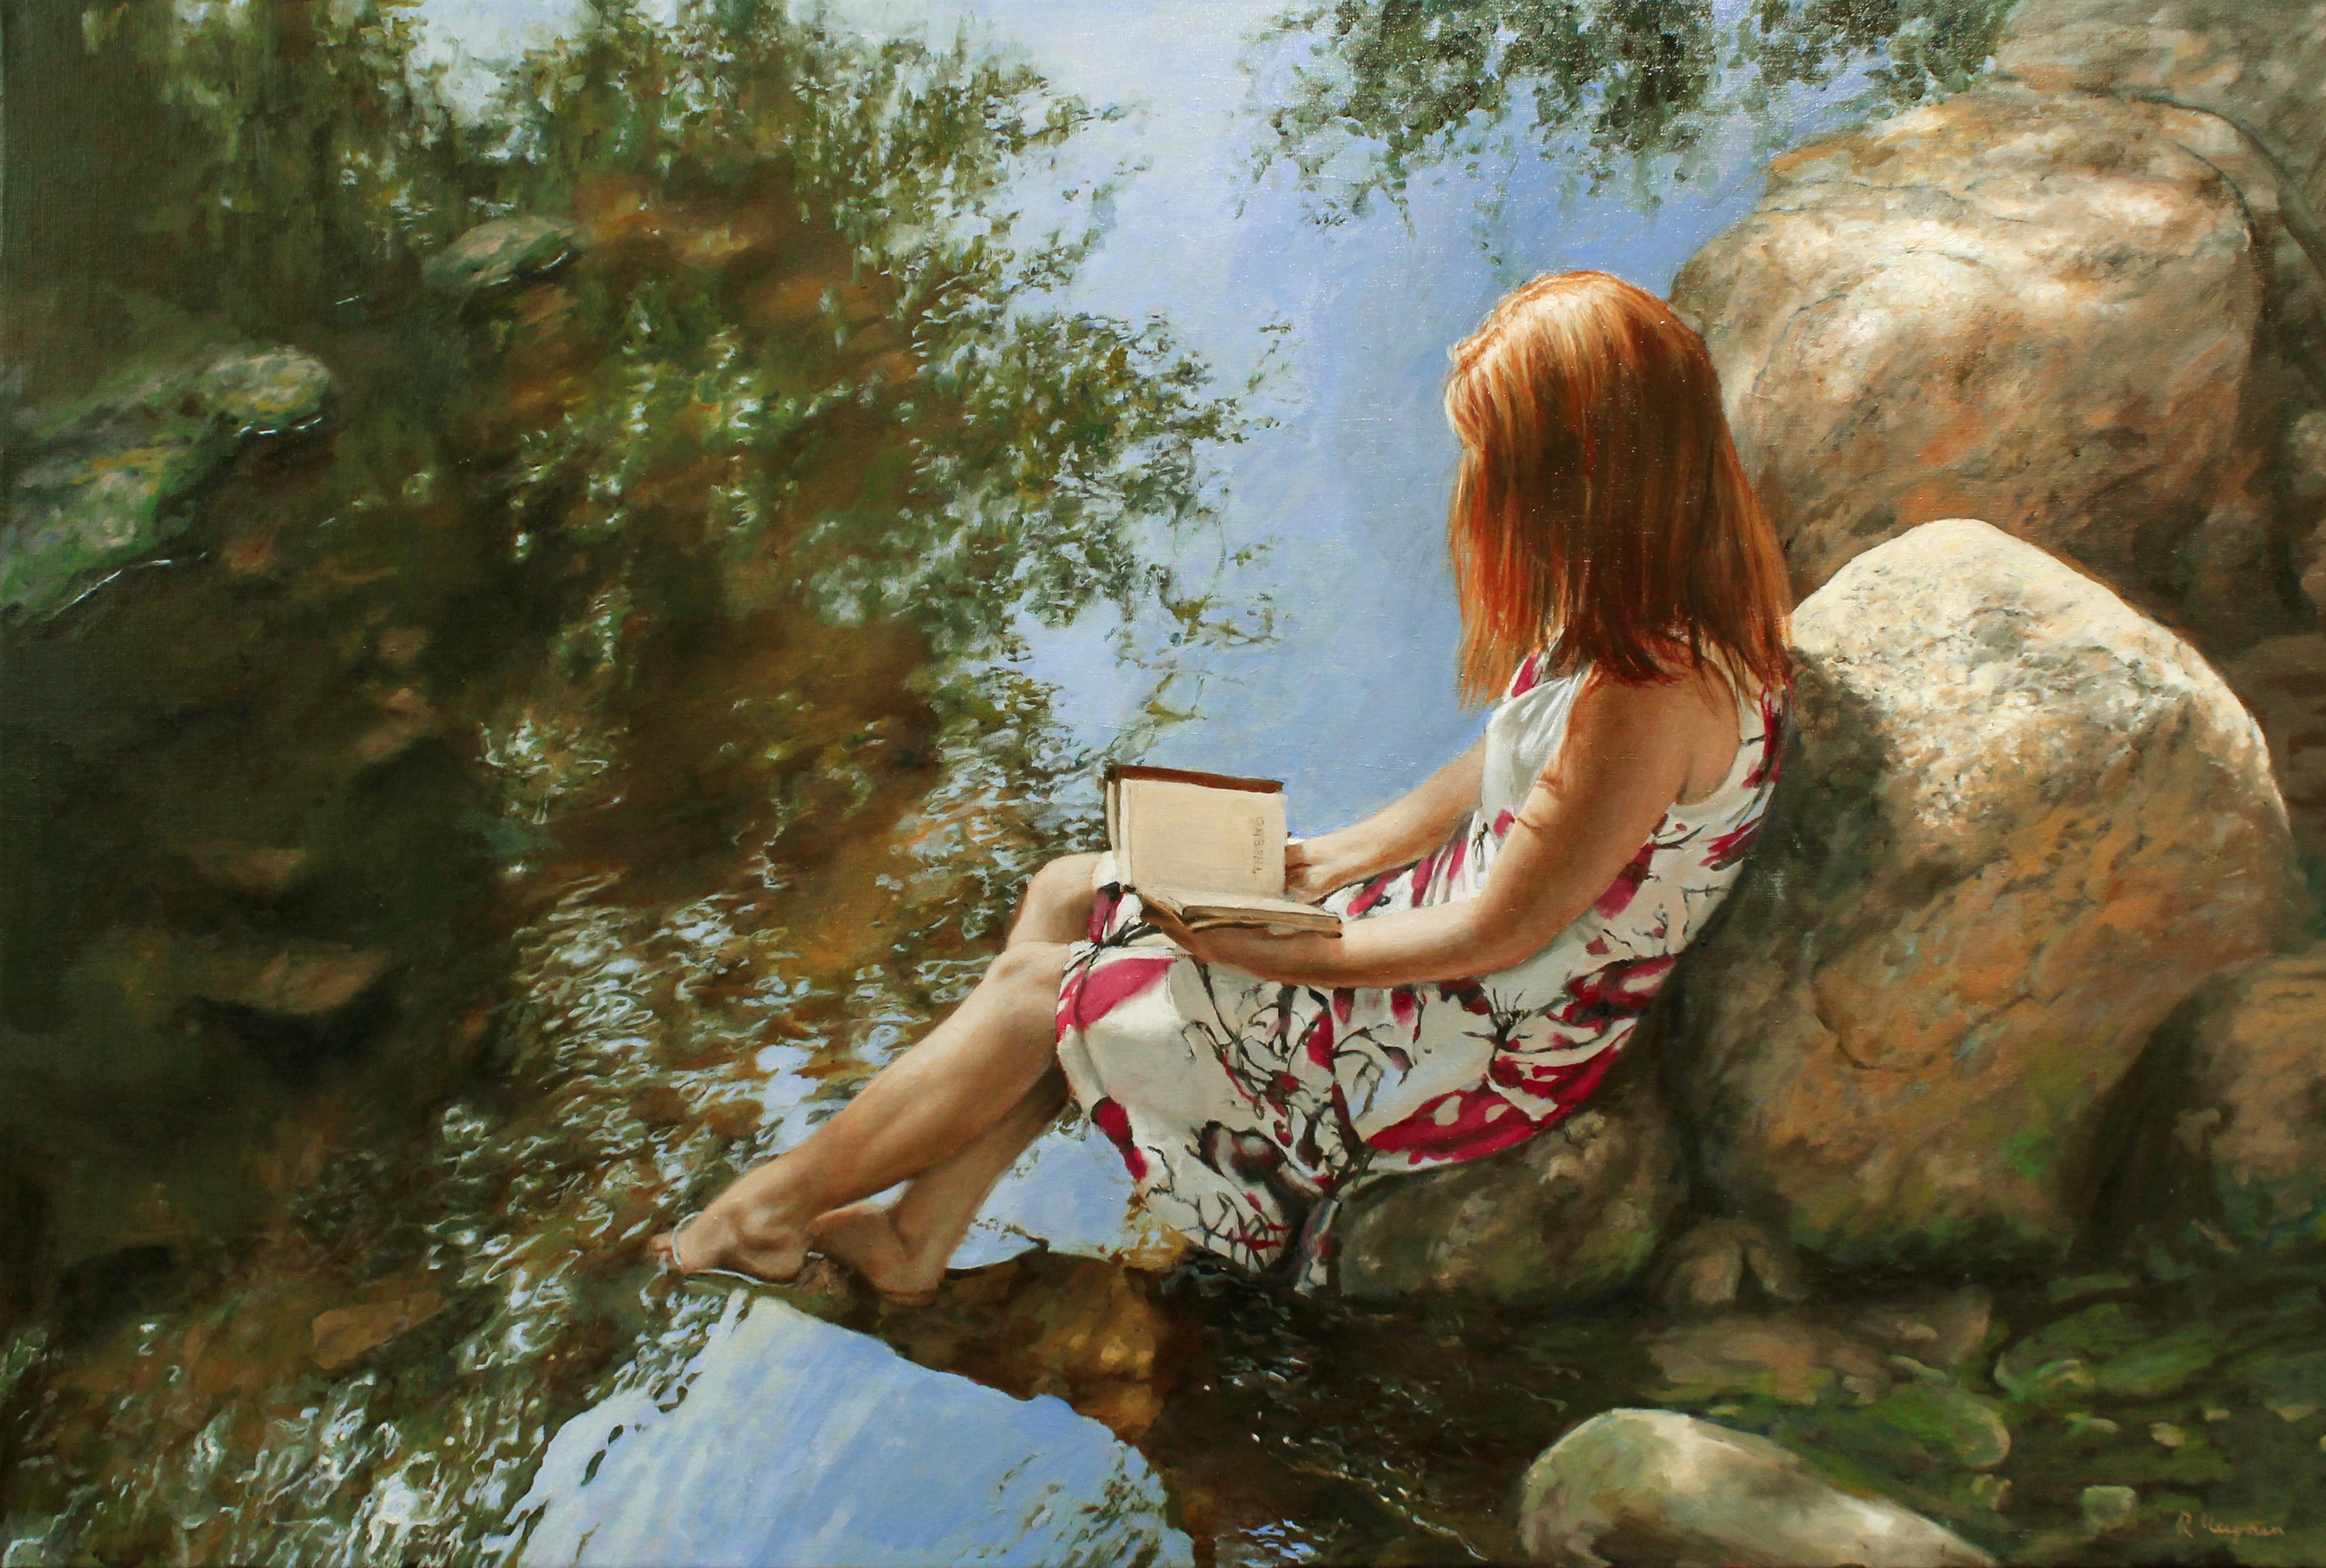 Zastaki.com - Нарисованная девушка с книгой сидит на камне у воды